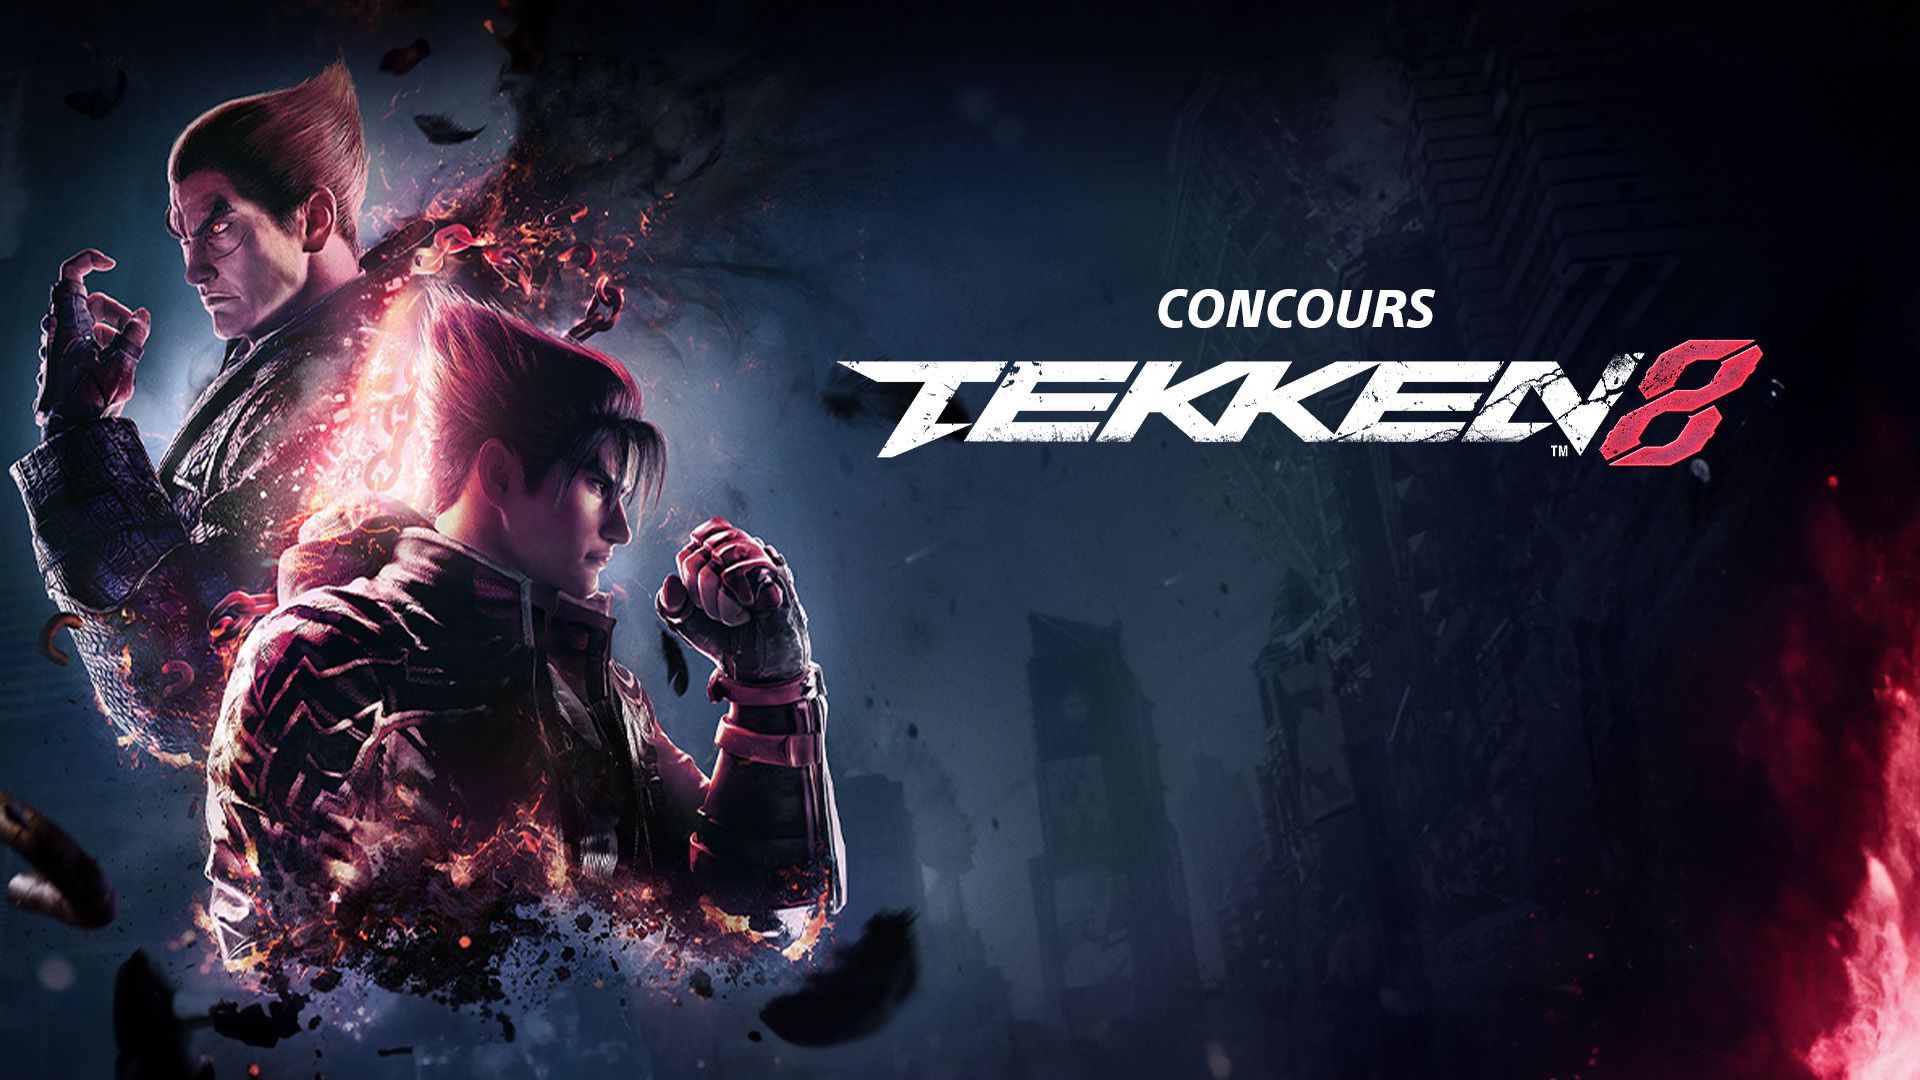 Concours - Tekken Evolution